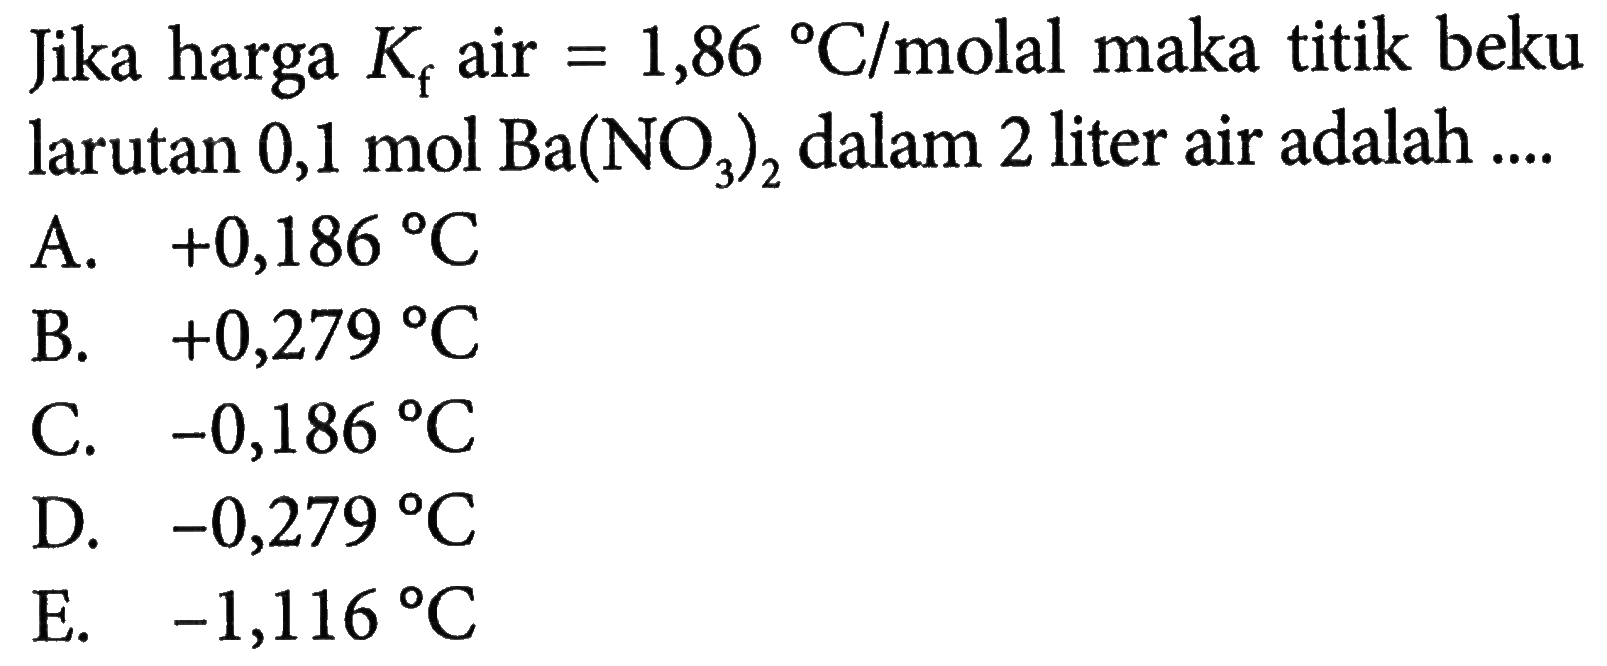 Jika harga Kf air = 1,86 C/molal maka titik beku larutan 0,1 mol Ba(NO3)2 dalam 2 liter air adalah ....